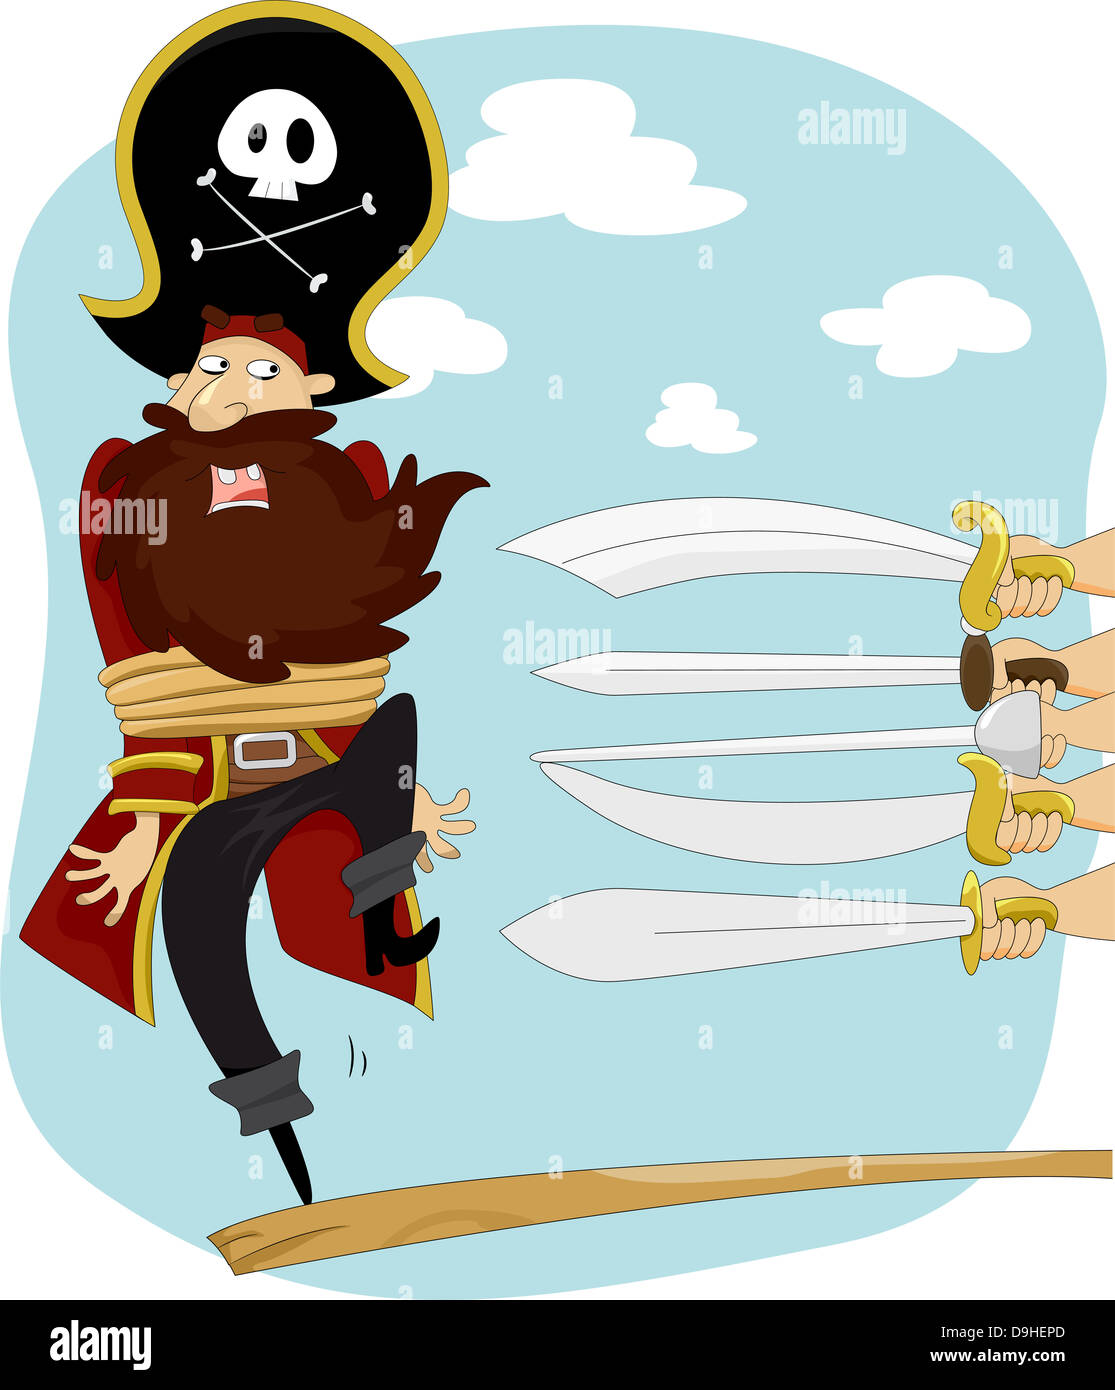 Abbildung der Schwerter zeigt auf männlichen Piraten Walking the Plank für Ausführung Stockfoto